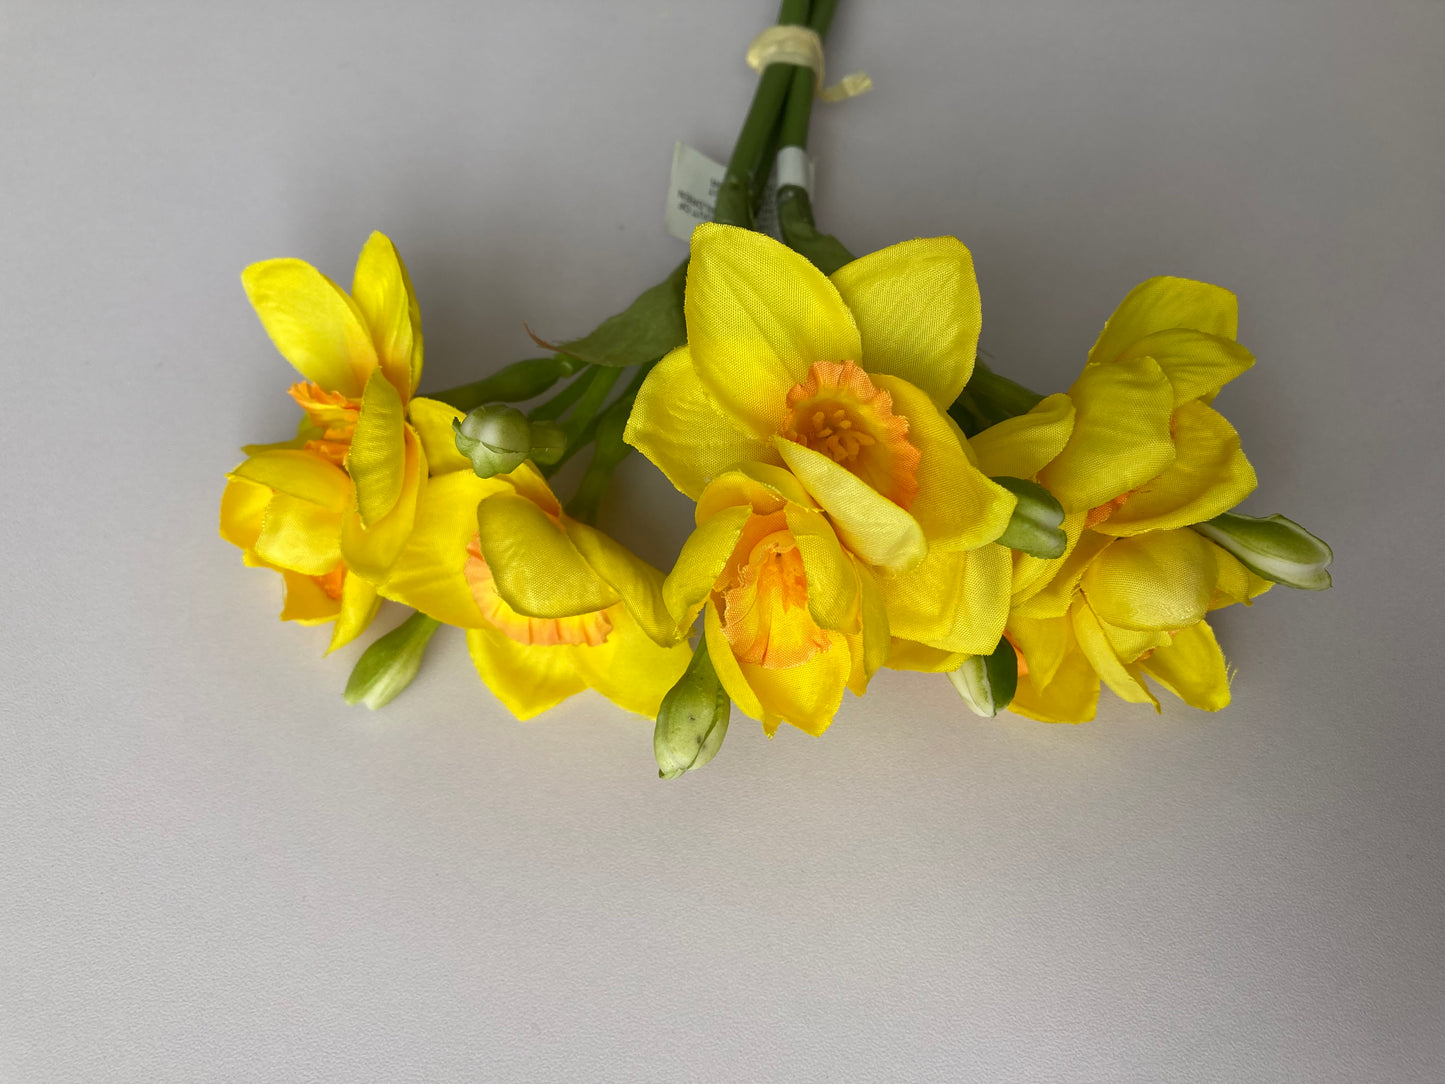 Small Daffodil Bunch